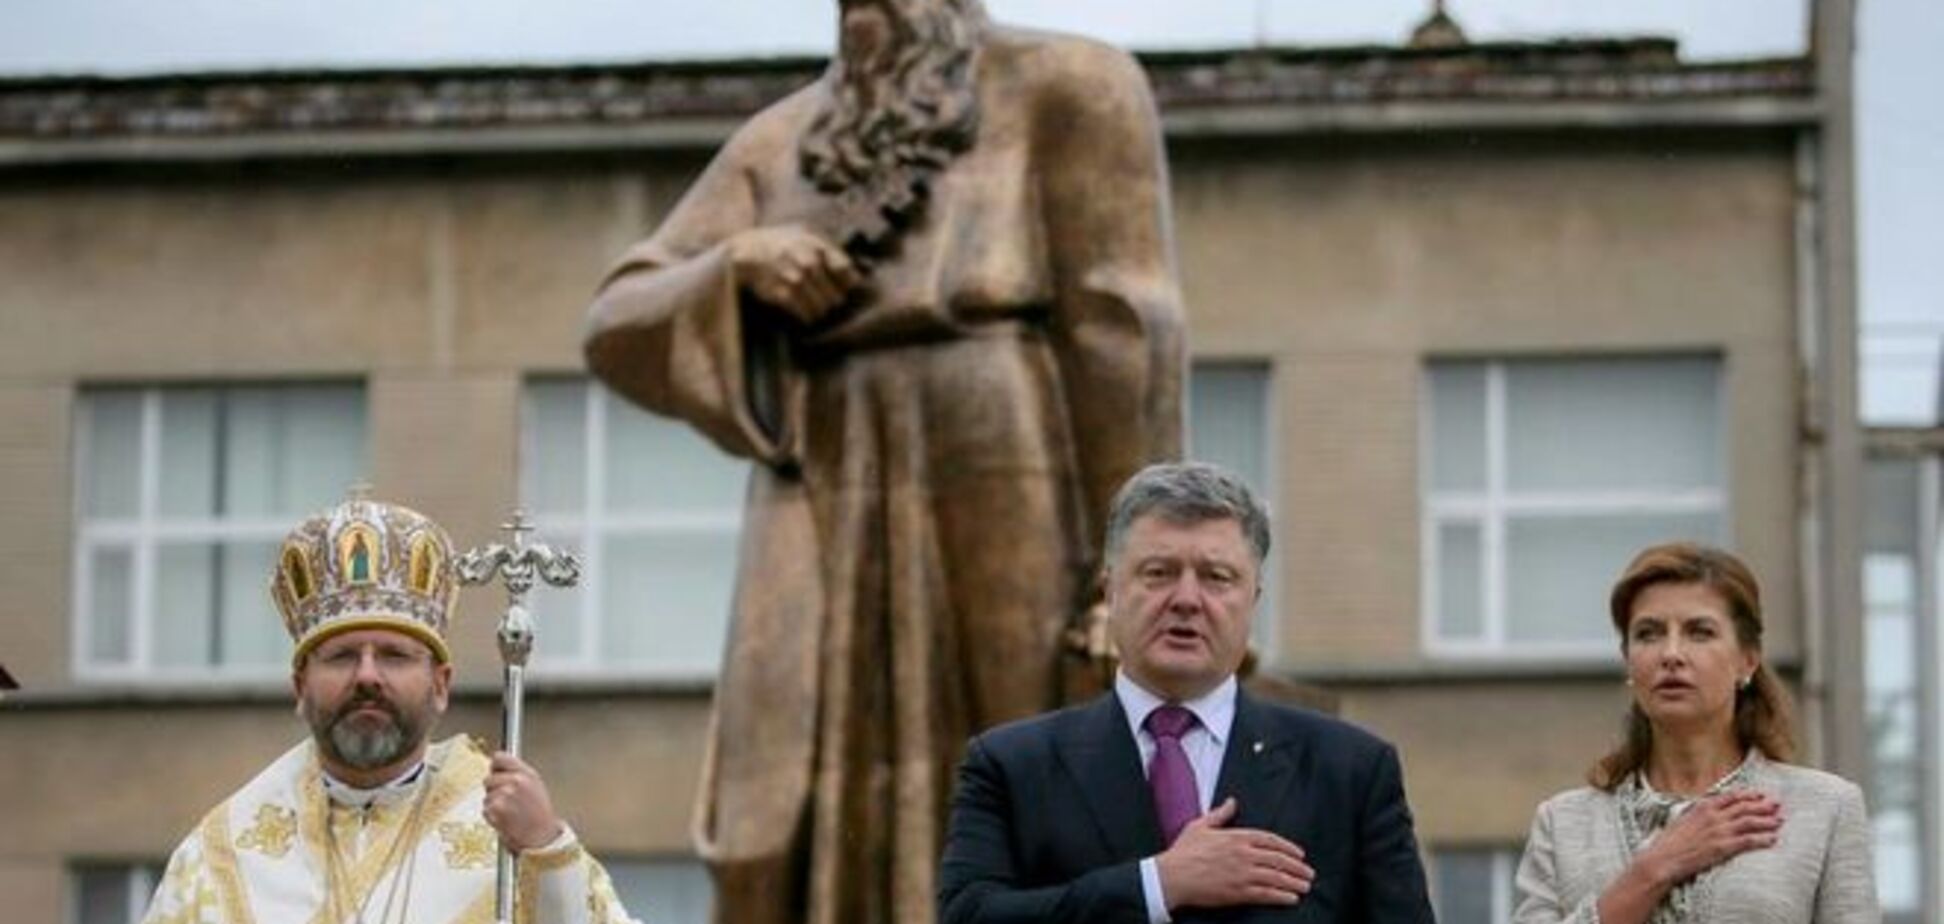 Во Львове открыли памятник митрополиту Шептицкому: опубликованы фото